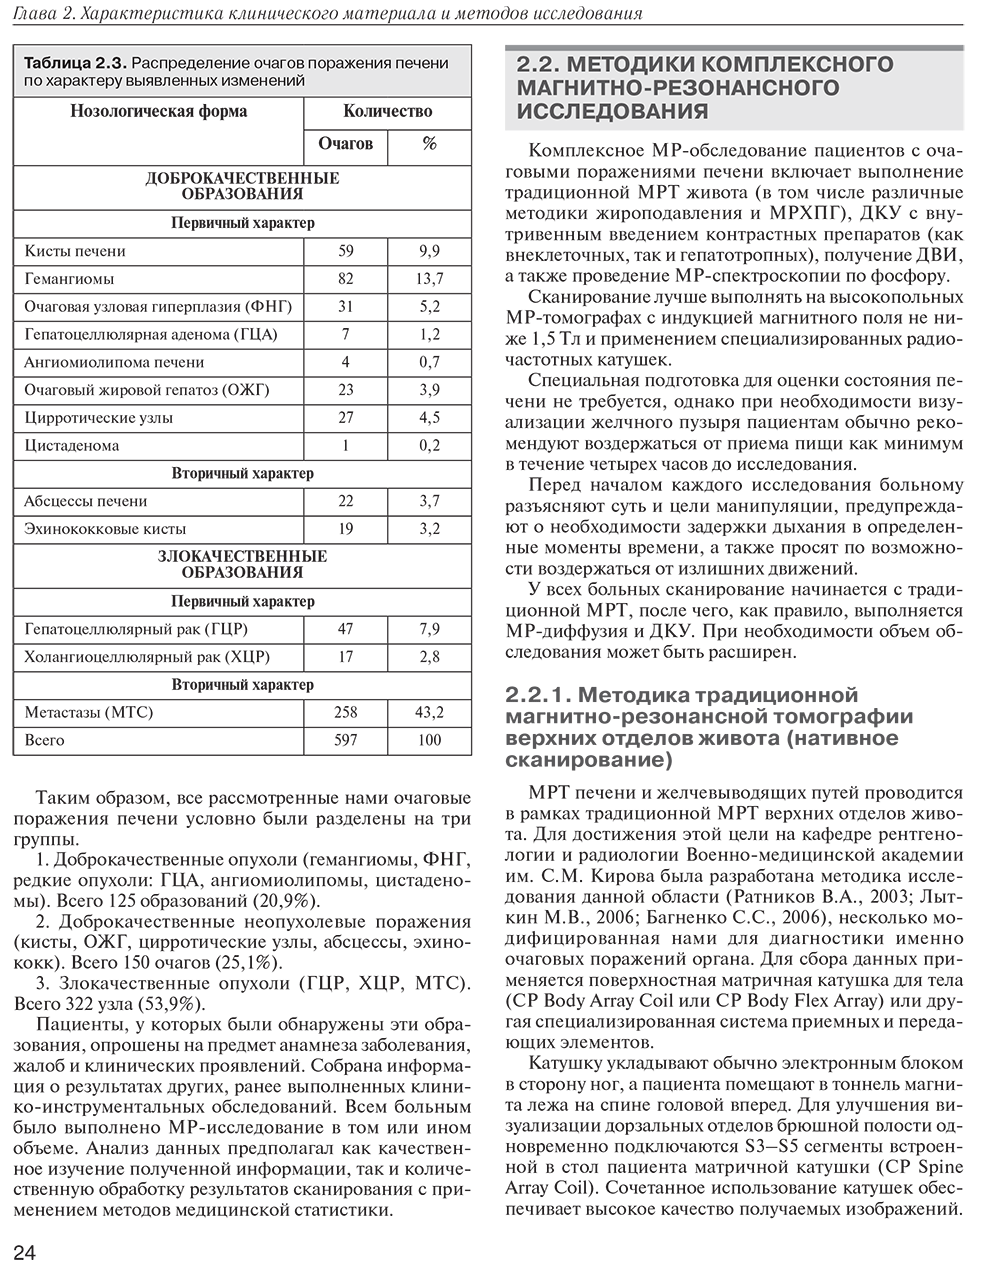 Пример страницы из книги "MPT-диагностика очаговых заболеваний печени" - Багненко С. С.